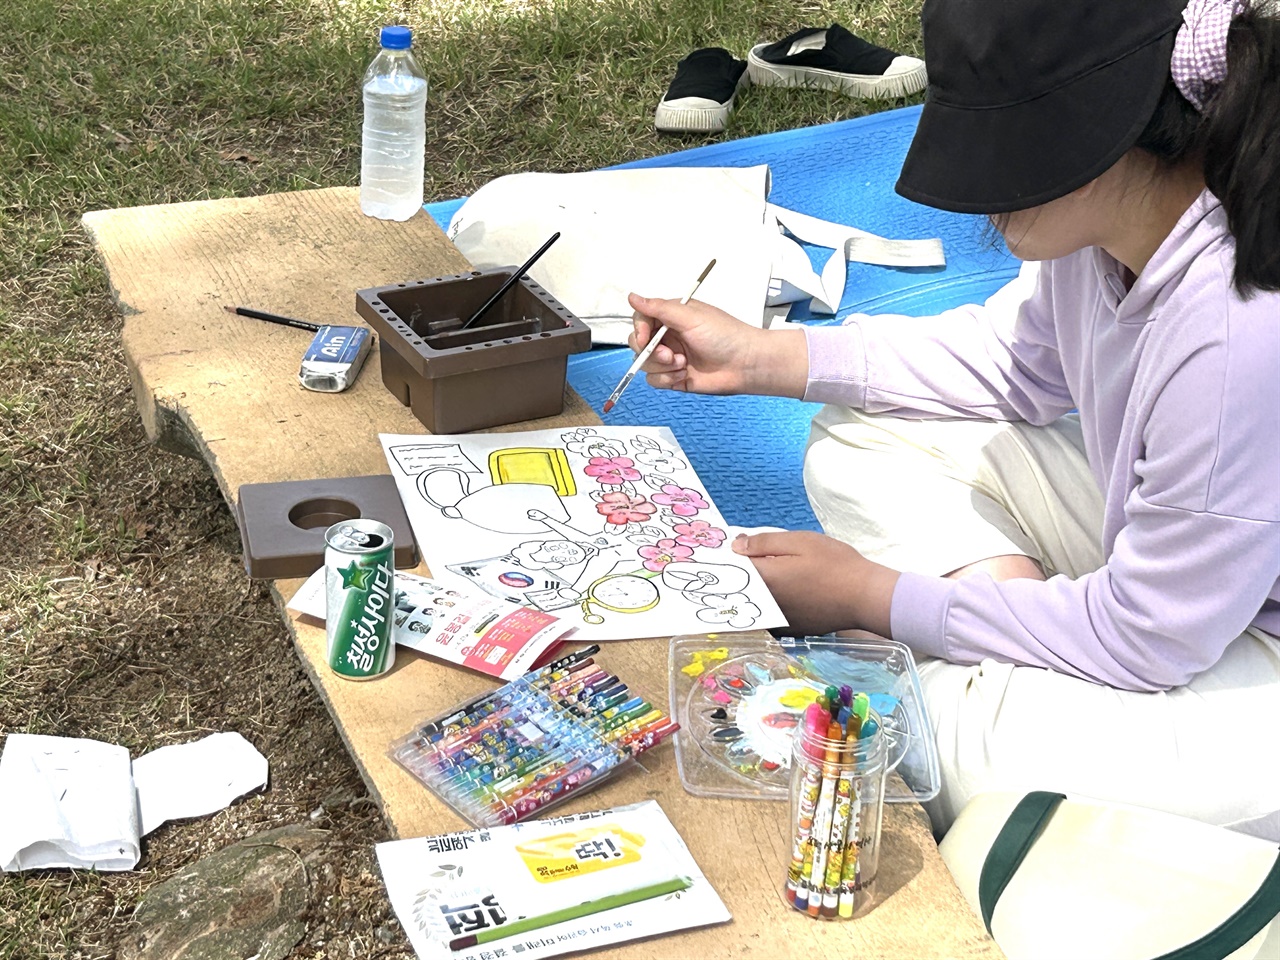 매헌 윤봉길 의사 관련 그림 그리기 대회에서 한 어린이가 그림을 그리고 있다.